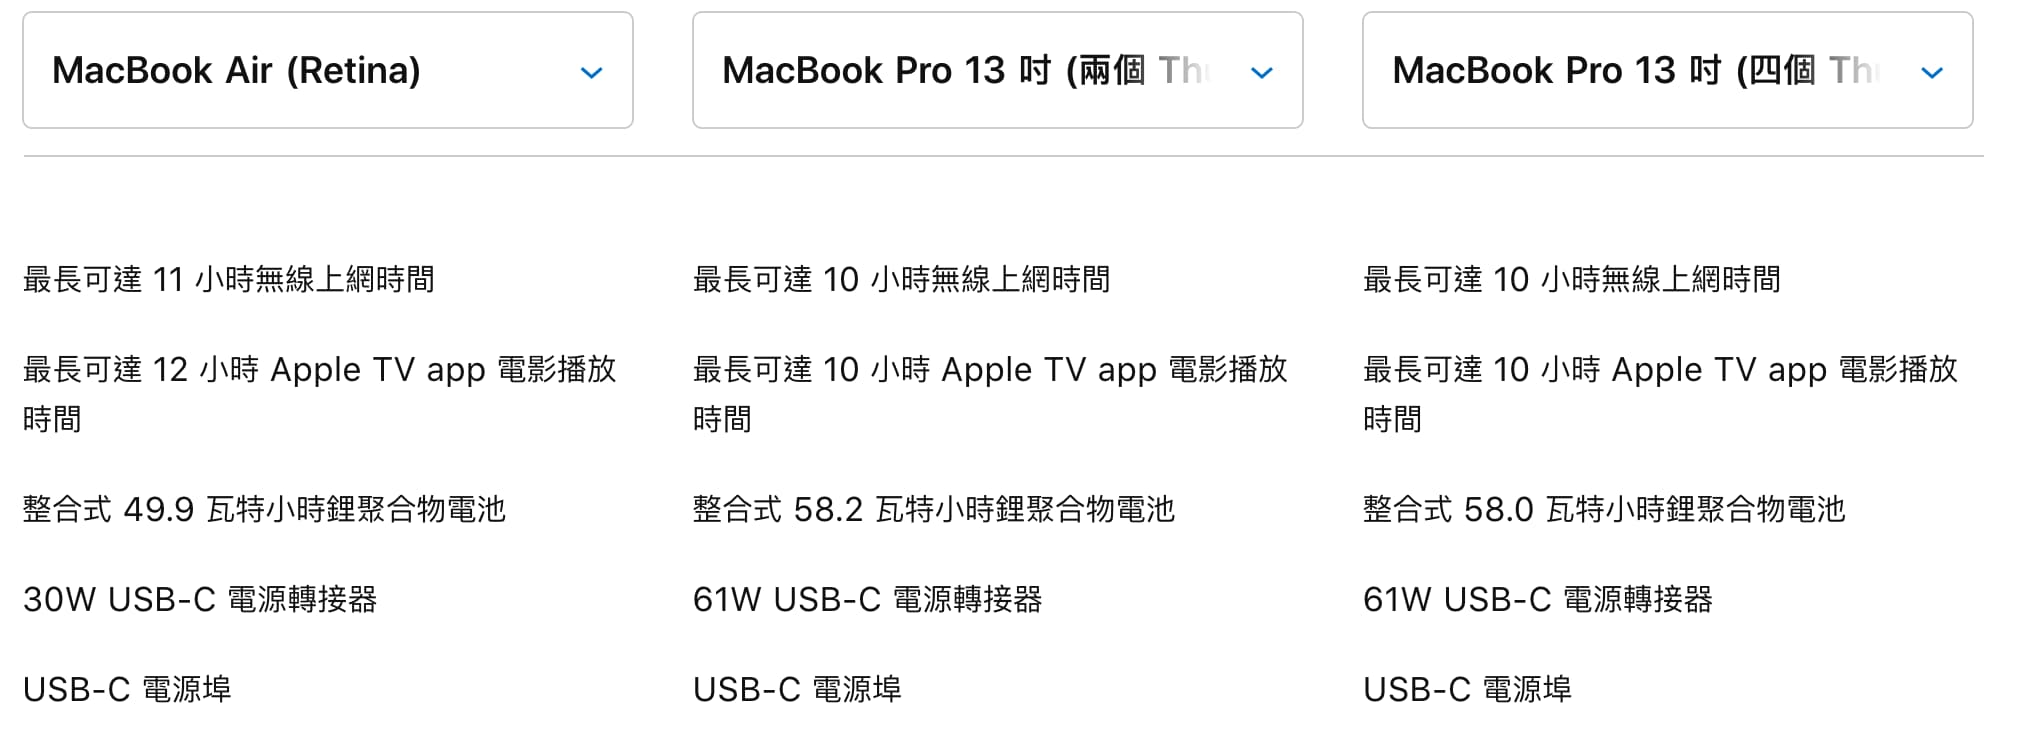 電池續航力差異 2020 MacBook Air vs. 2020 Macbook Pro 13吋(入門款) vs. 2020 Macbook Pro 13吋(進階款)